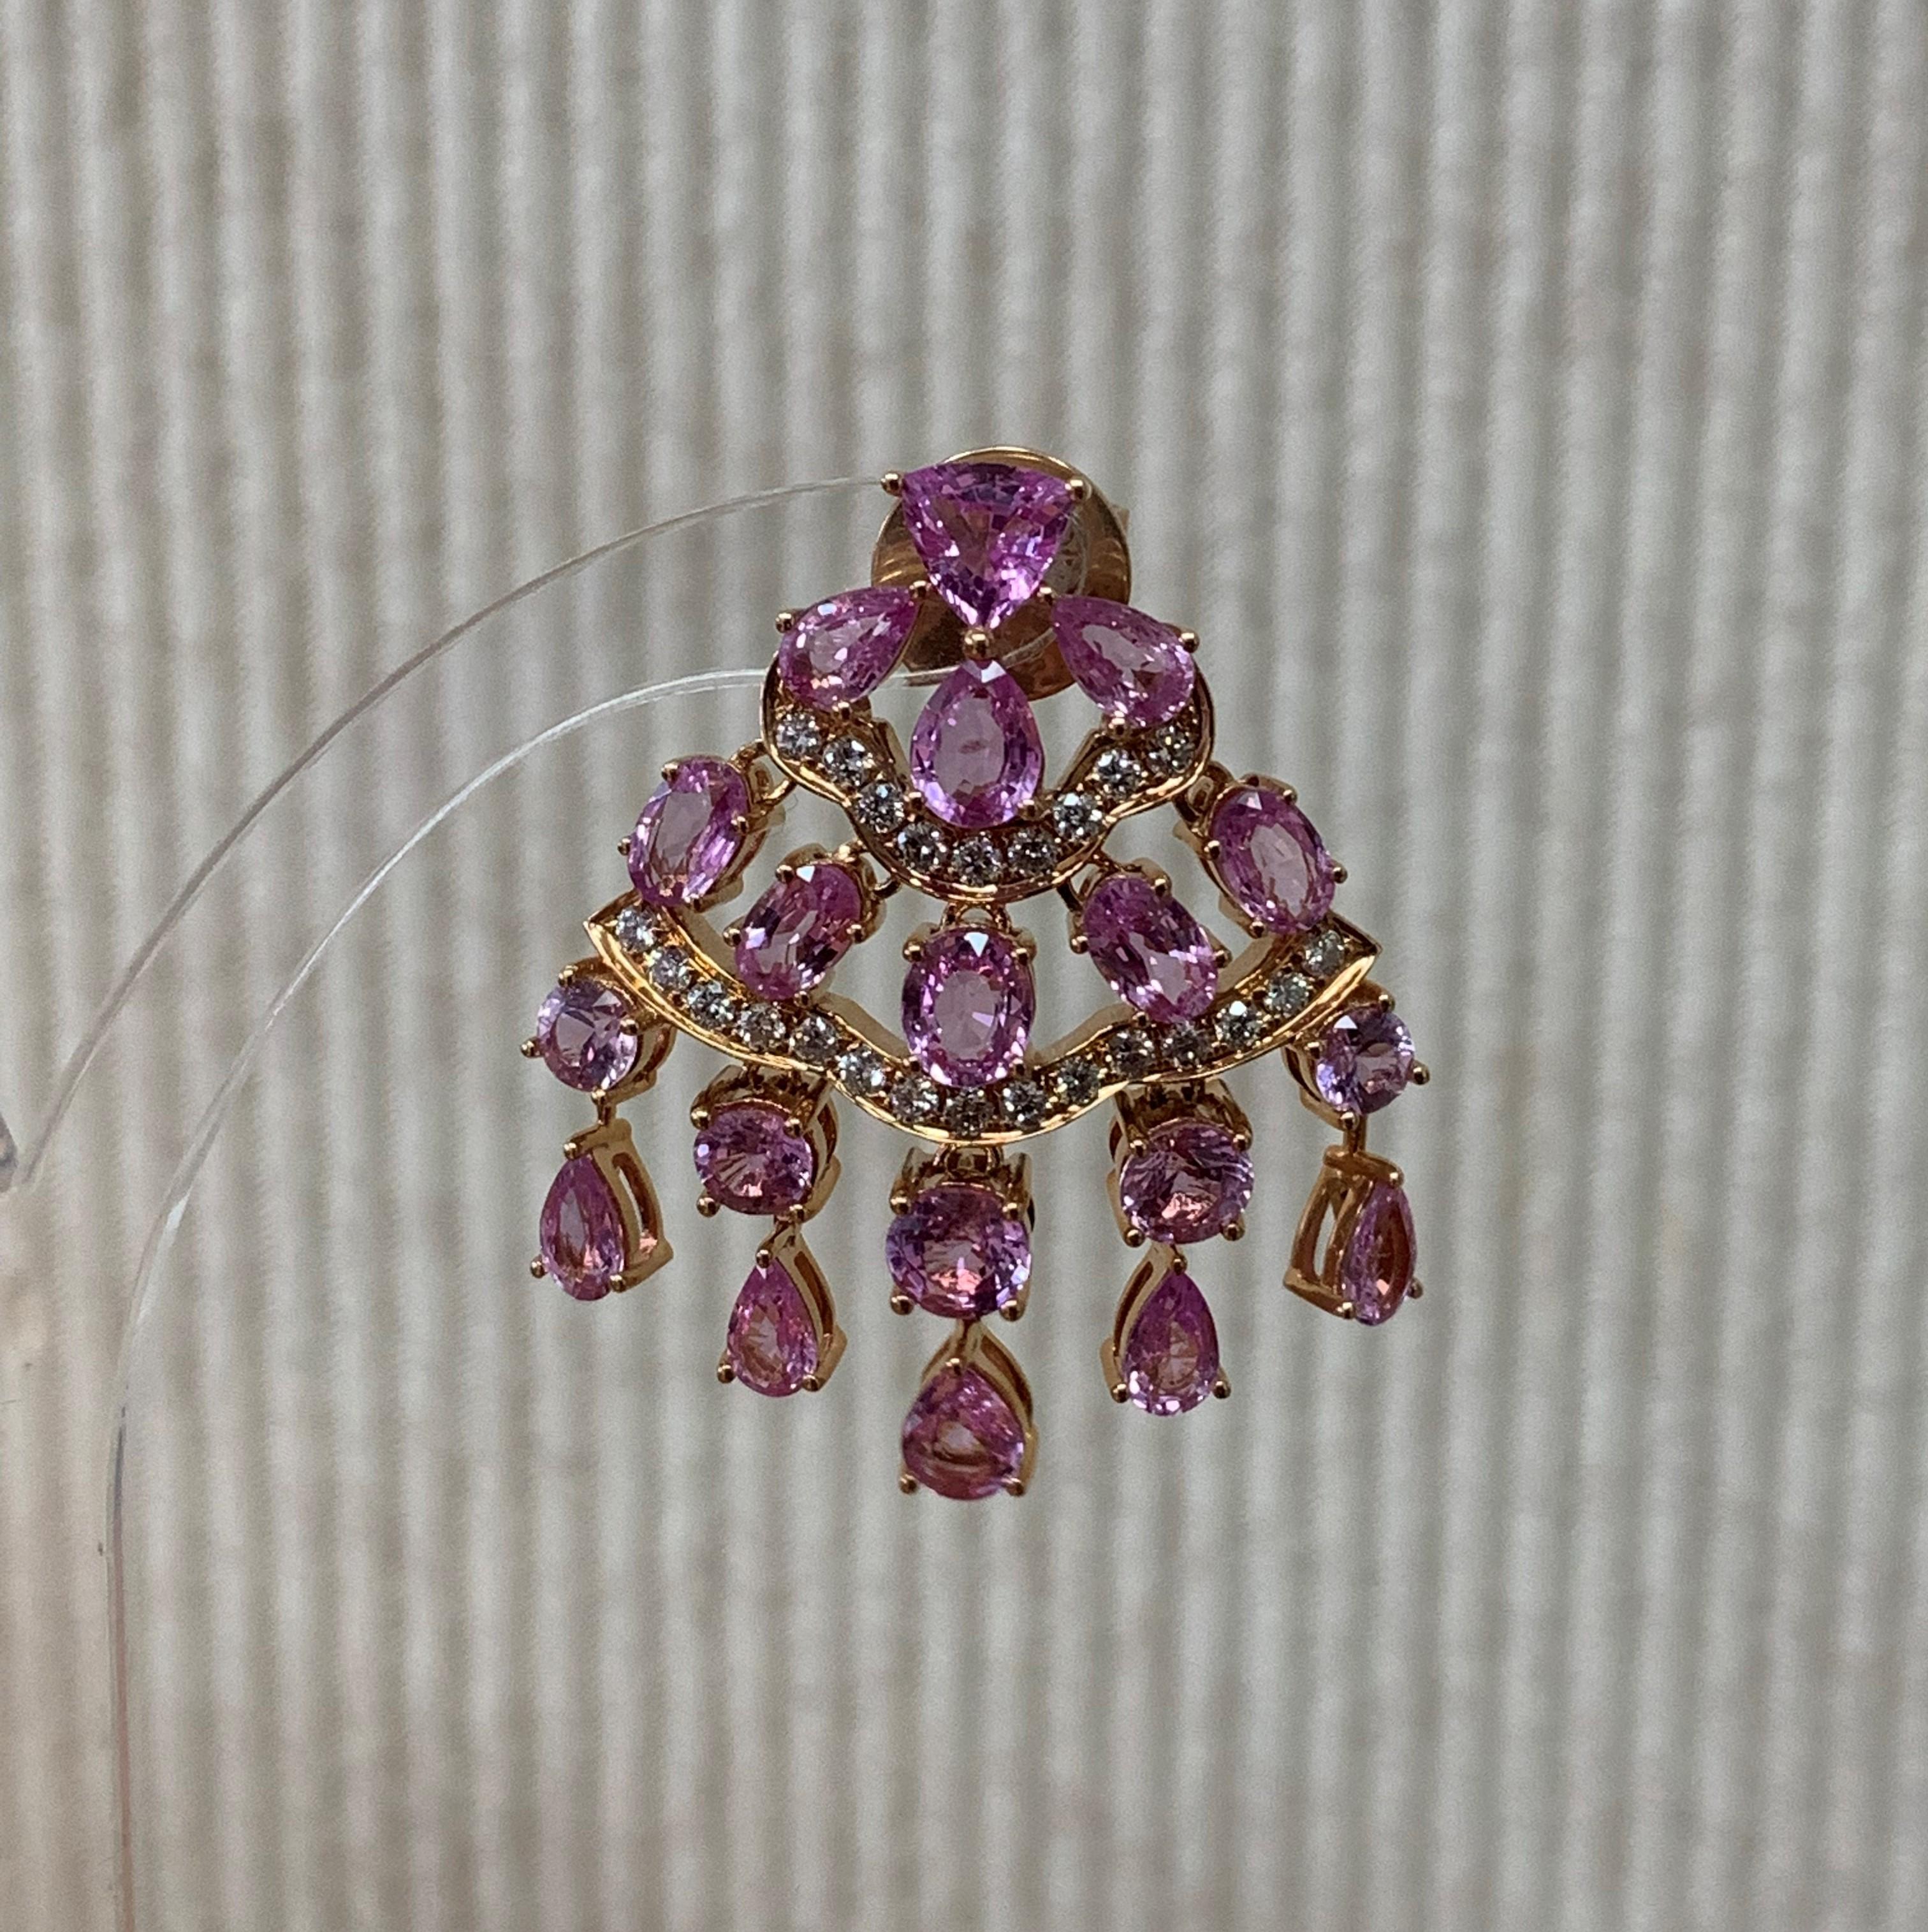 Sunita Nahata präsentiert eine exklusive Kollektion von Ohrringen aus rosa Saphiren. Dieser Ohrring ist mit baumelnden Saphiren und Diamanten besetzt und fällt elegant auf die Trägerin. 

Designer-Ohrring mit rosa Saphiren aus 18 Karat Roségold mit